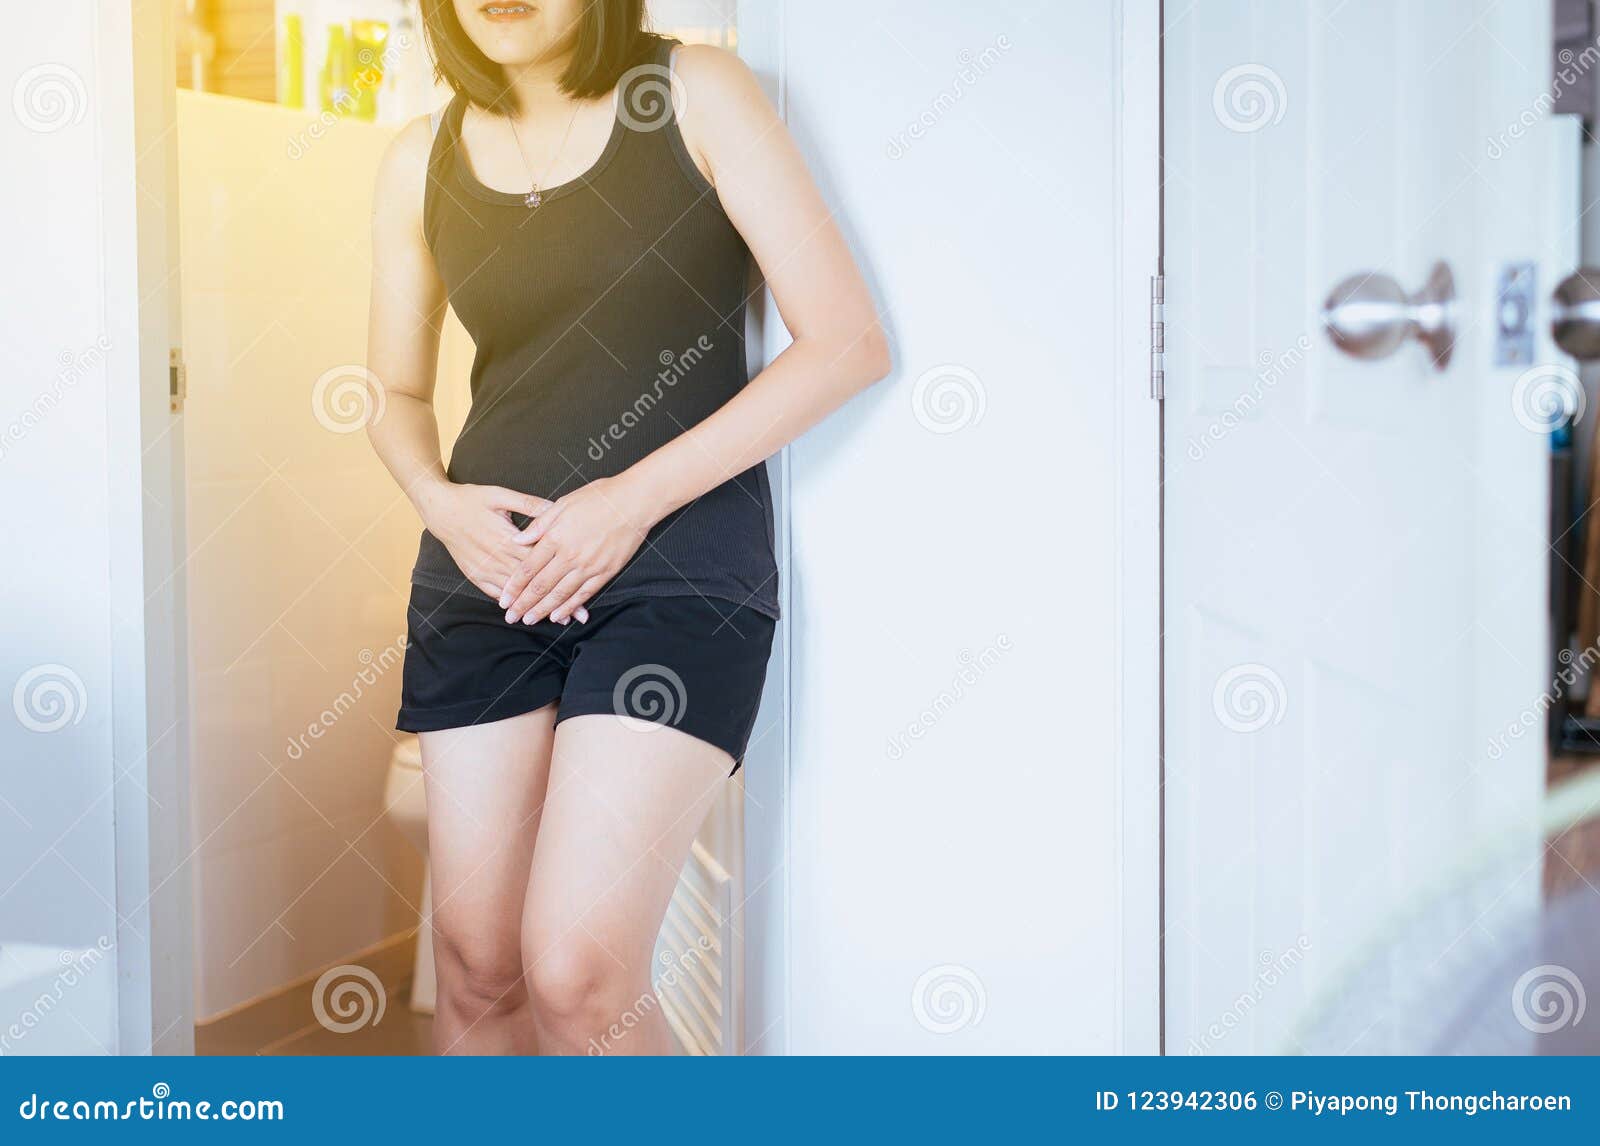 asian girls peeing their pants